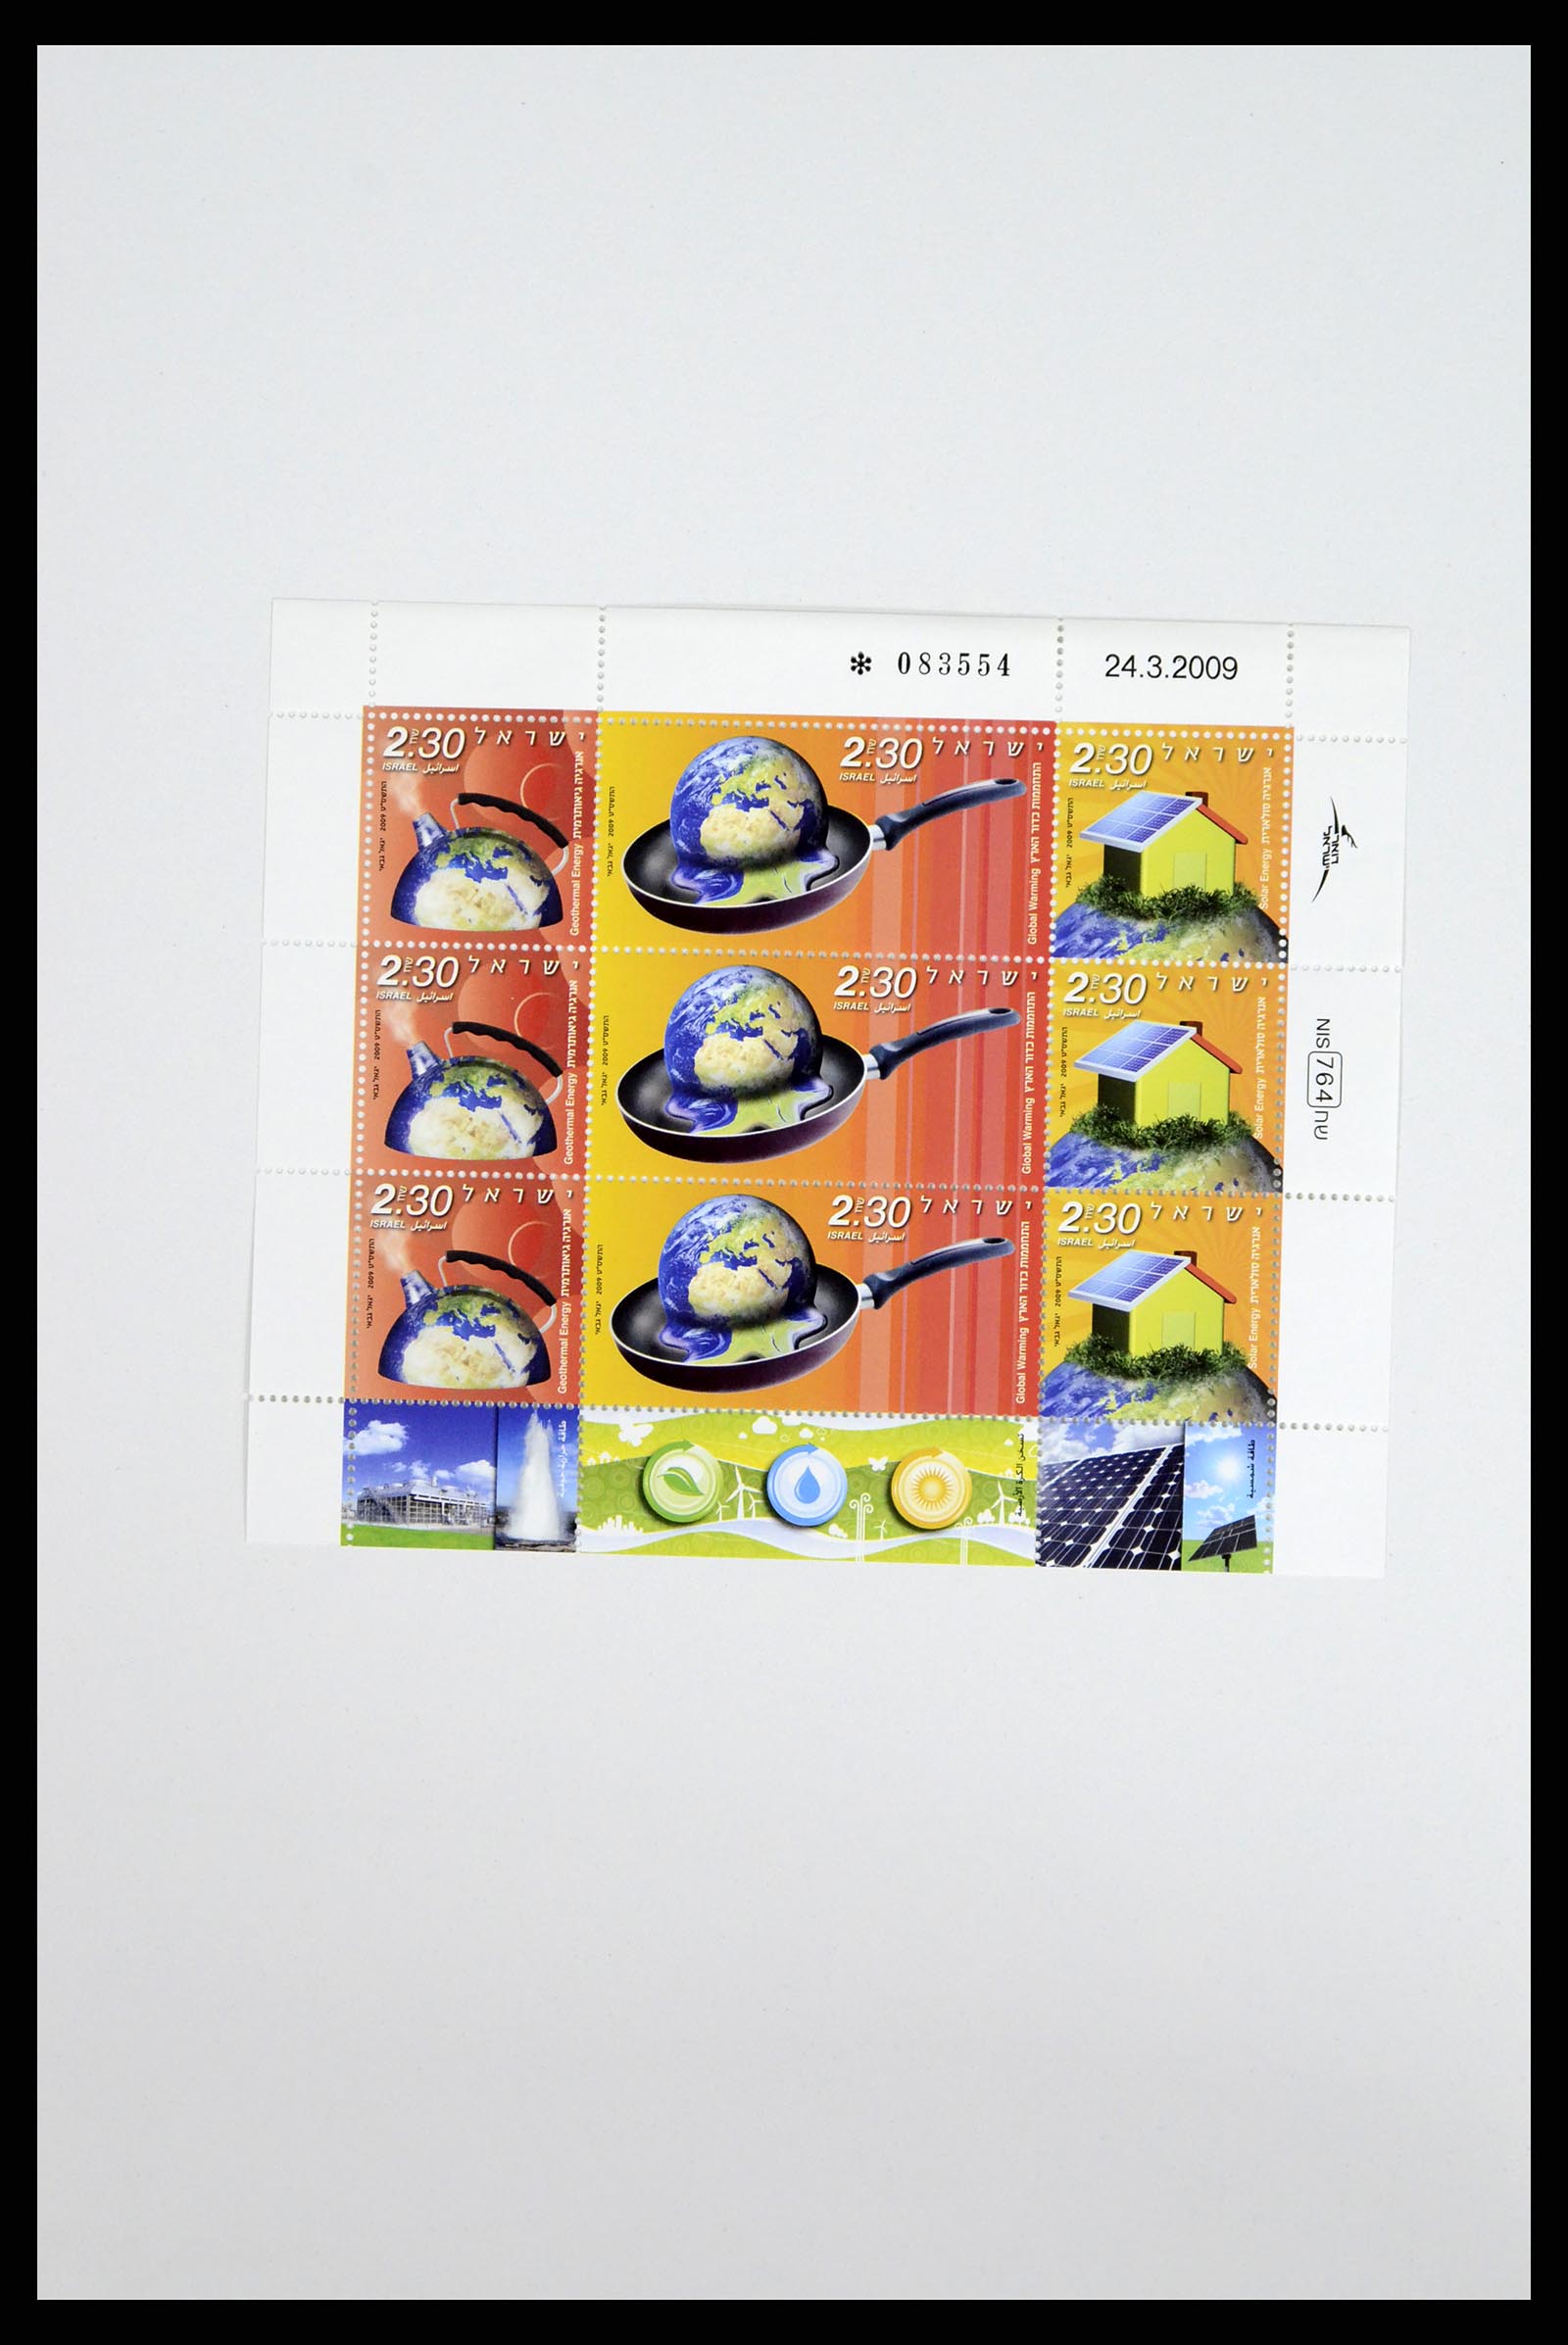 37779 082 - Postzegelverzameling 37779 Israël velletjes 1986-2009.